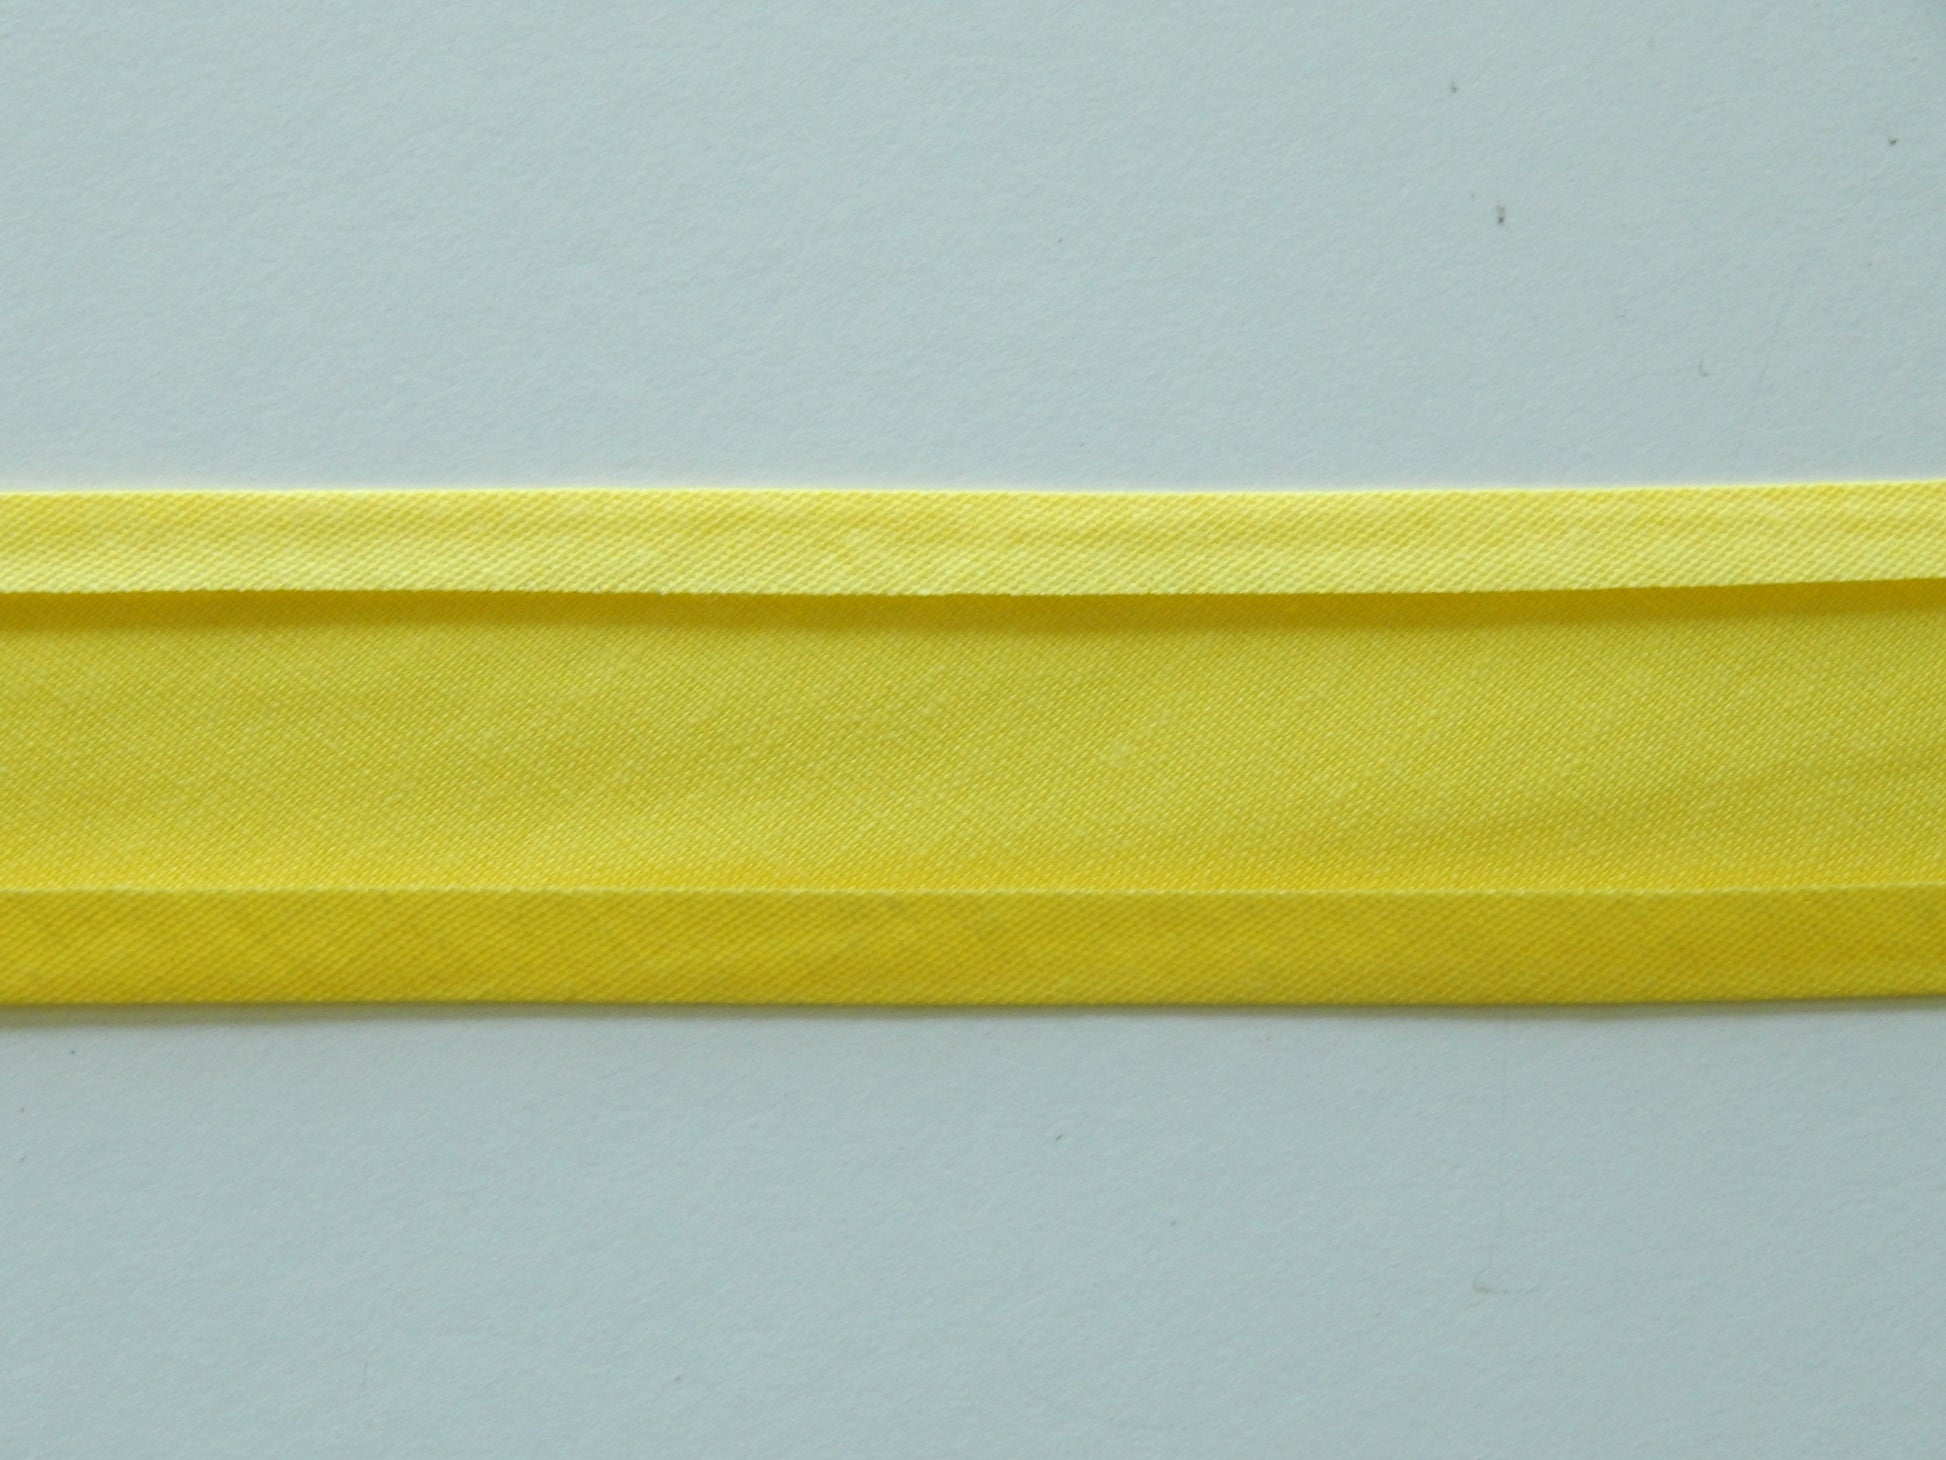 yellow cotton bias binding